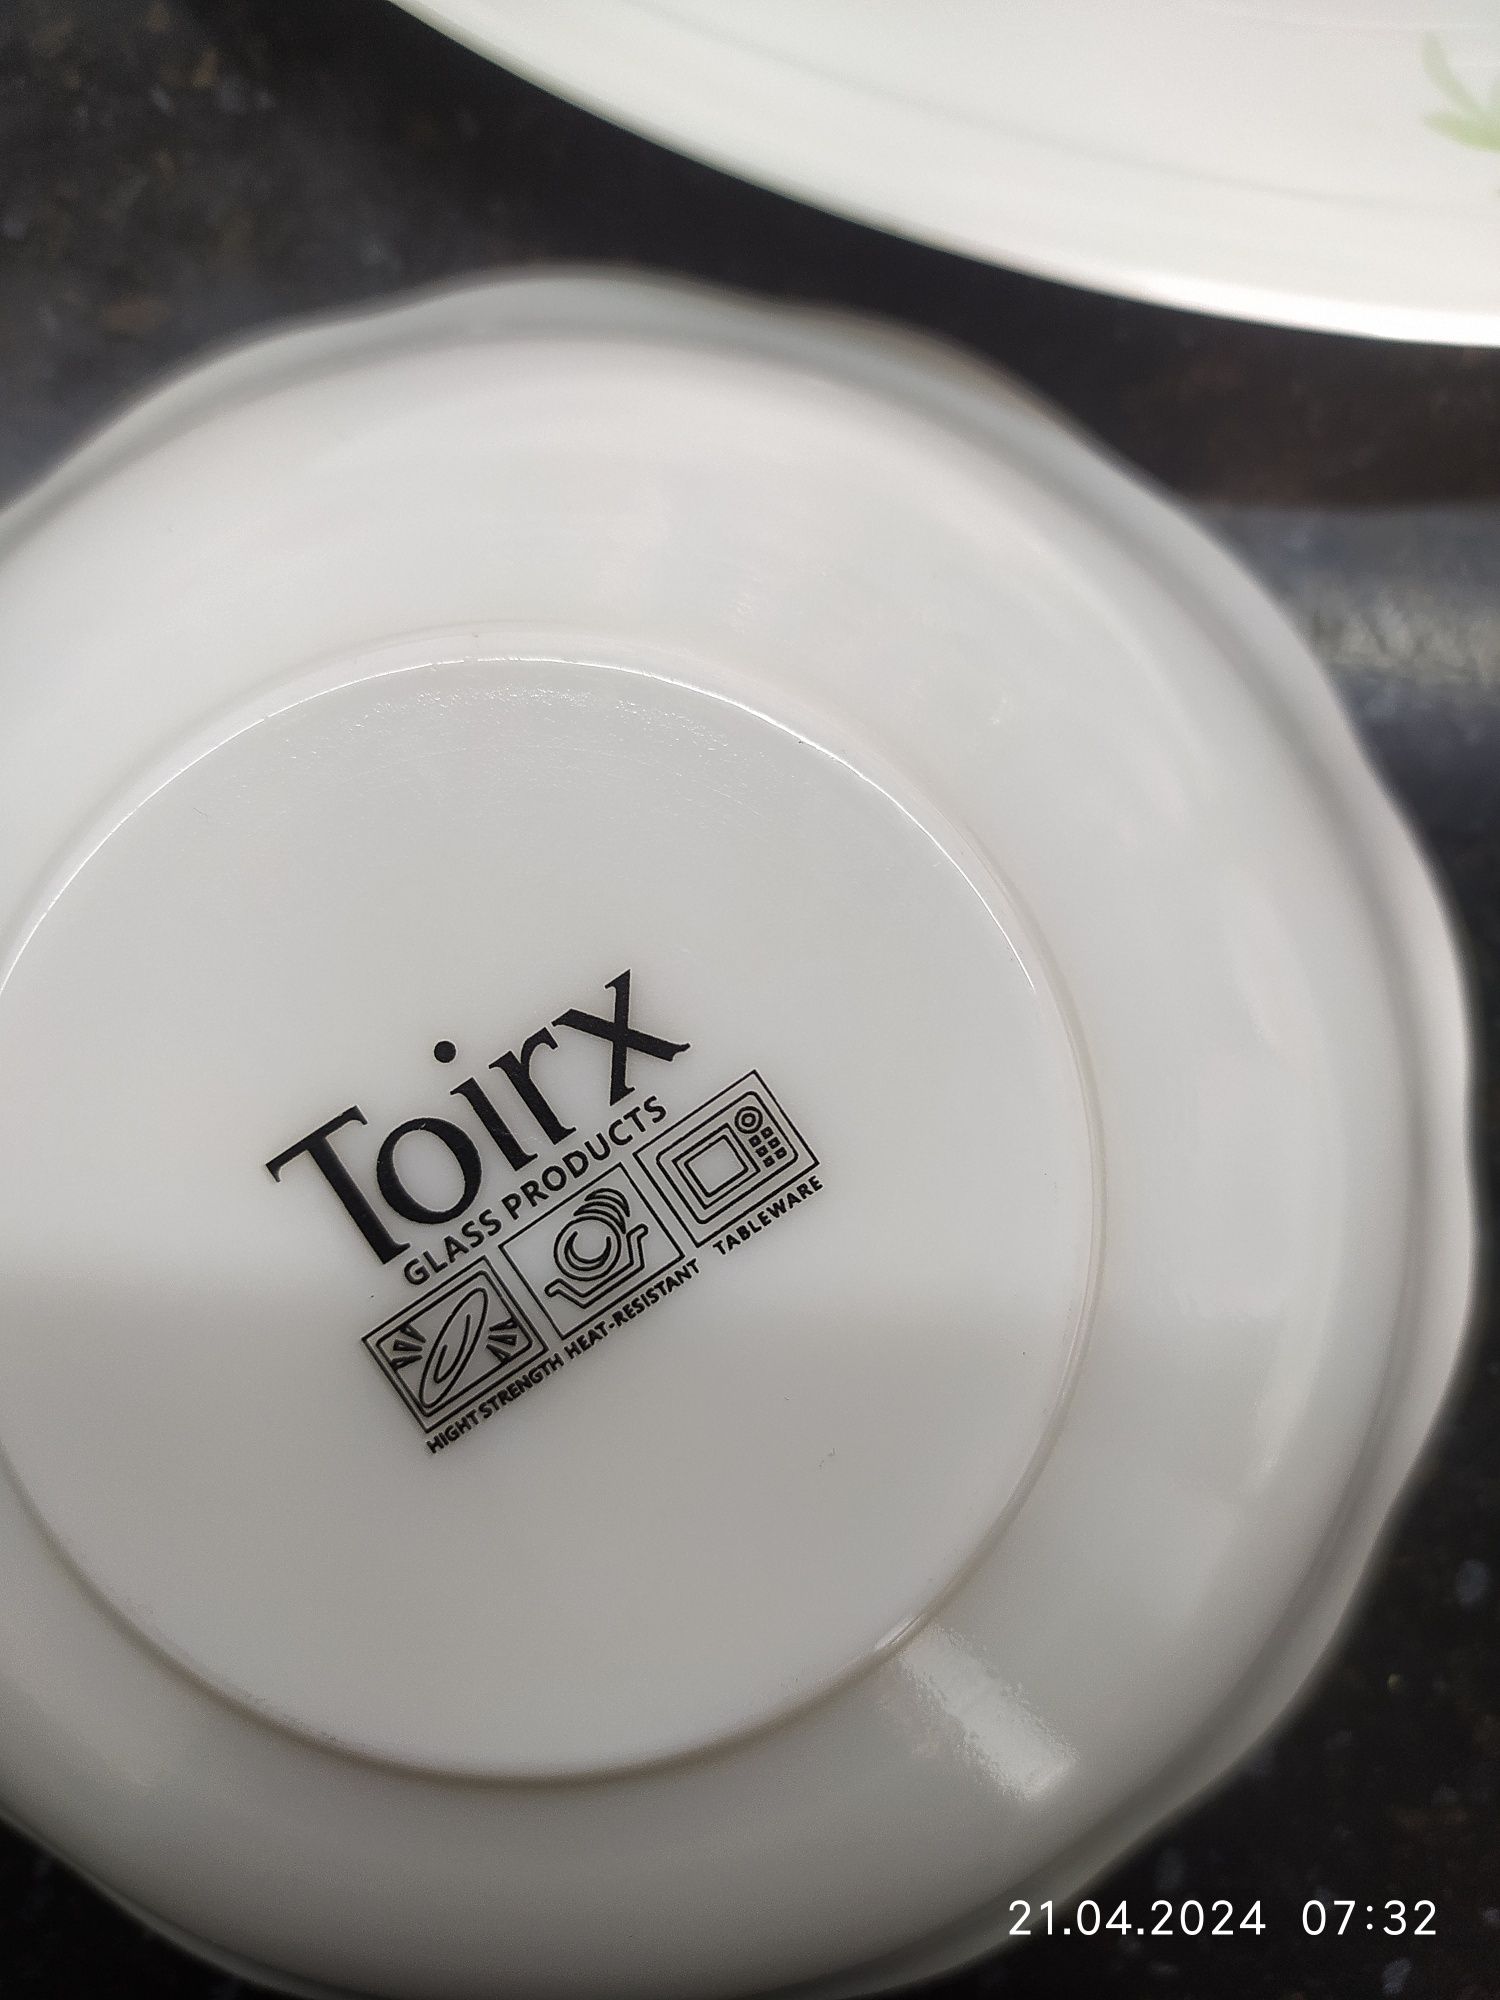 Pasuda nabor  Toirx (Loona)firma